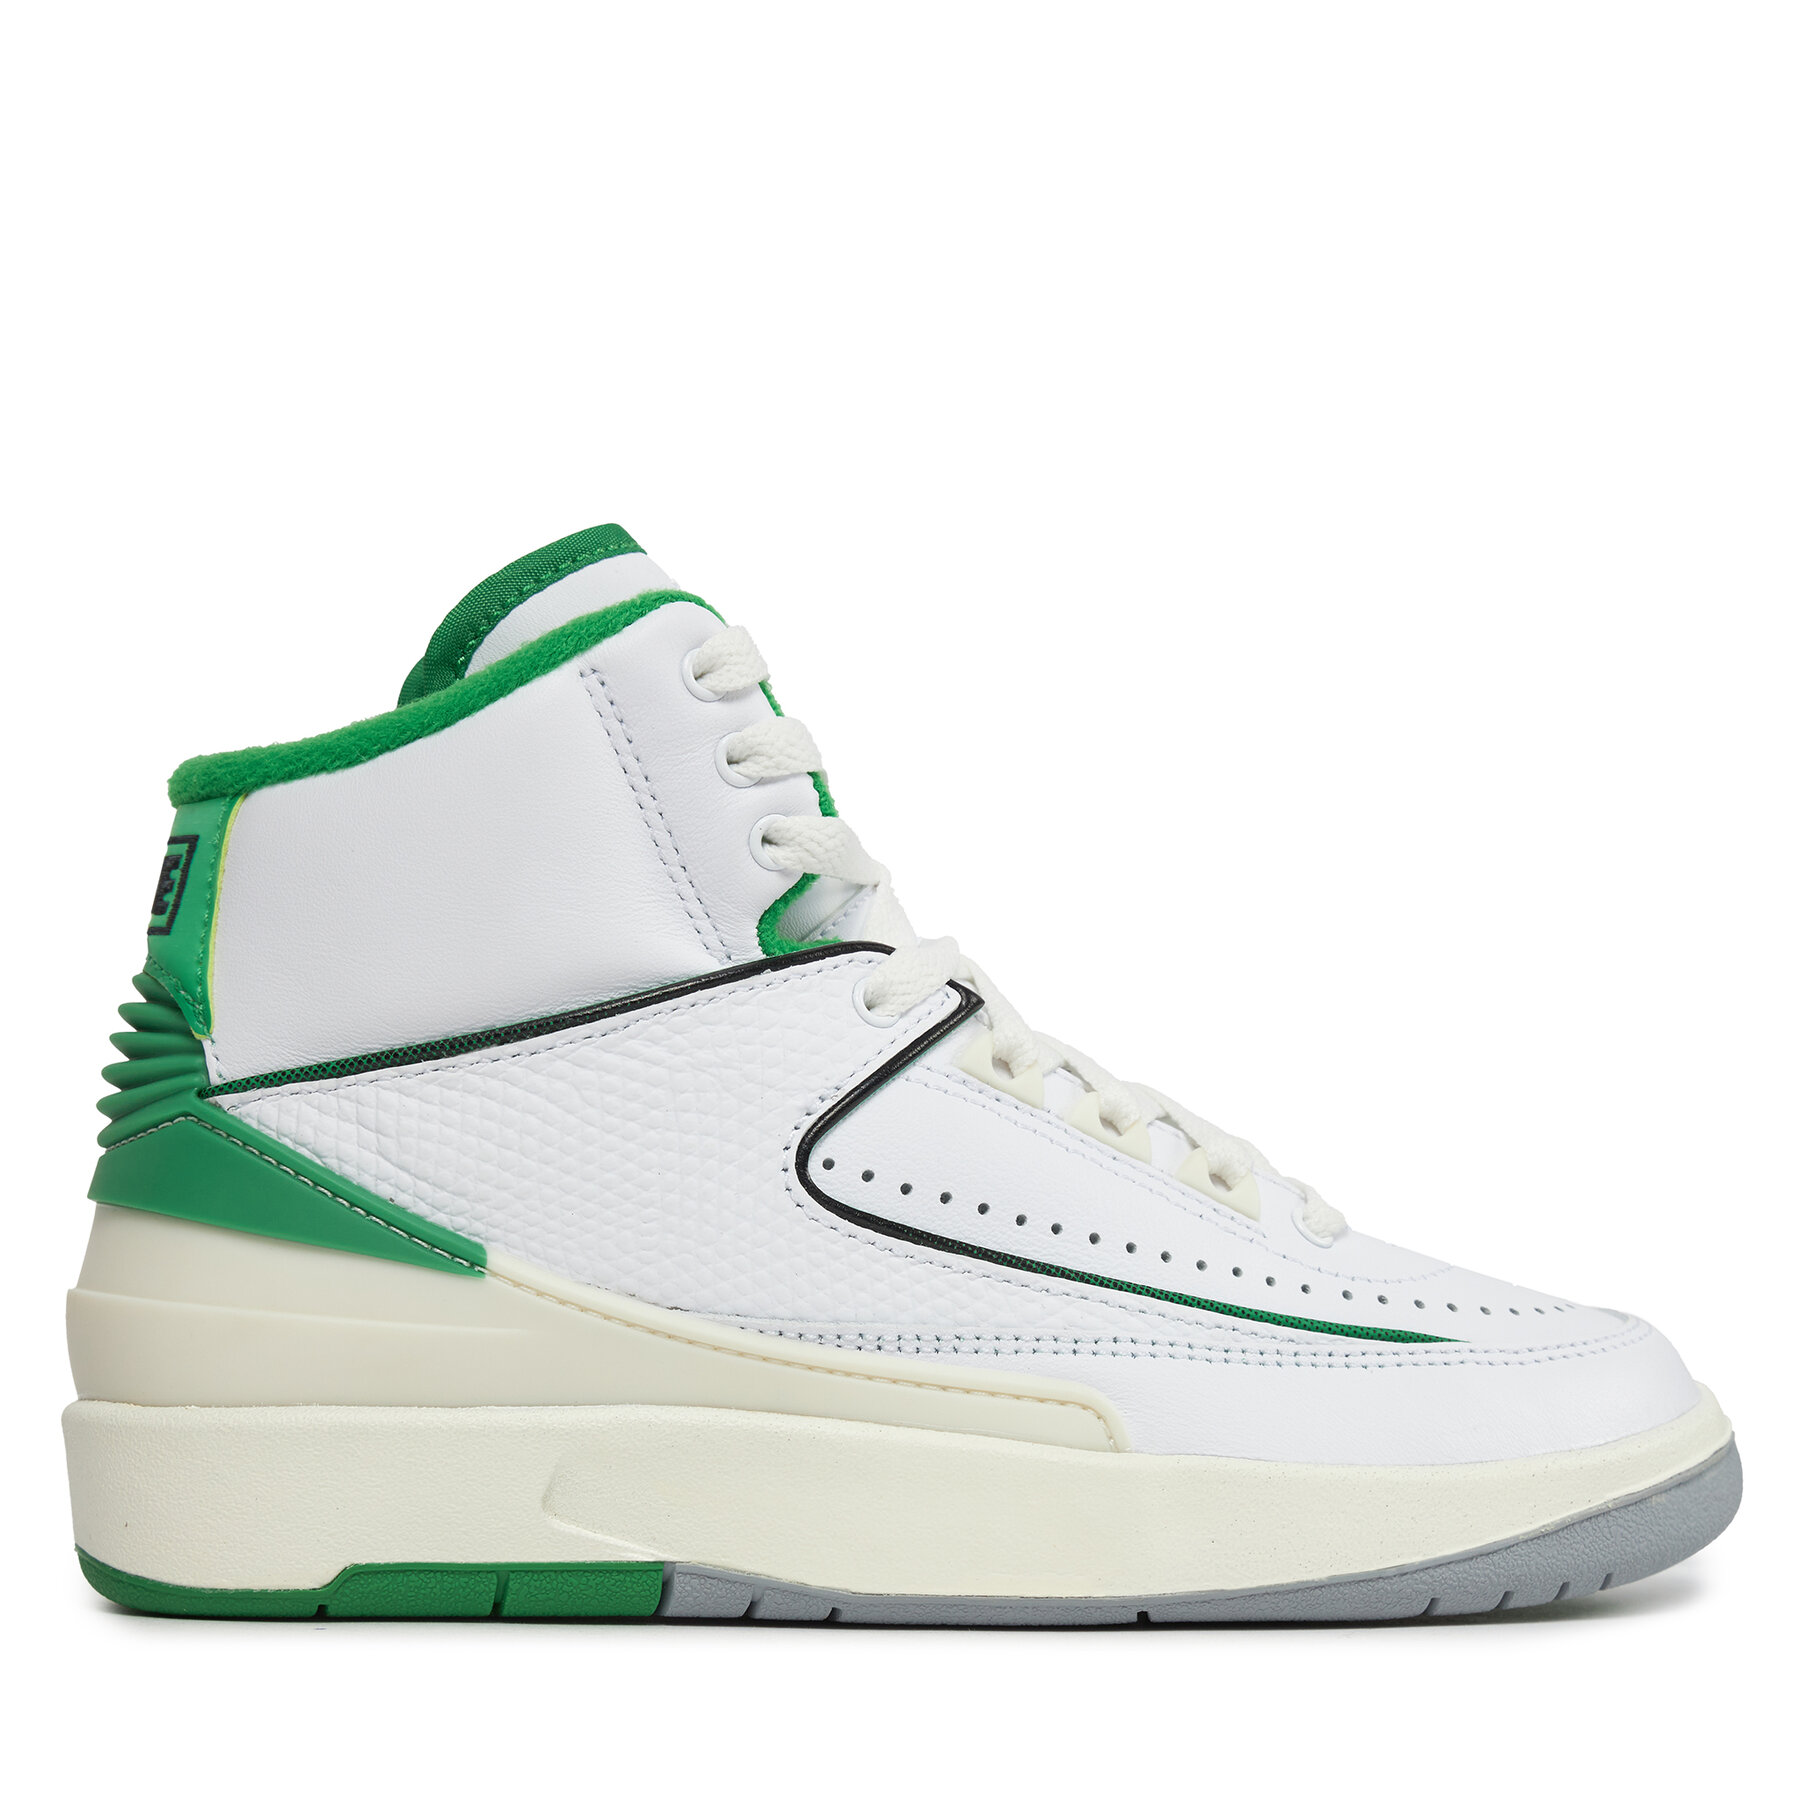 Batai Nike Air Jordan 2 Retro (GS) DQ8562 103 White/Lucky Green/Sail